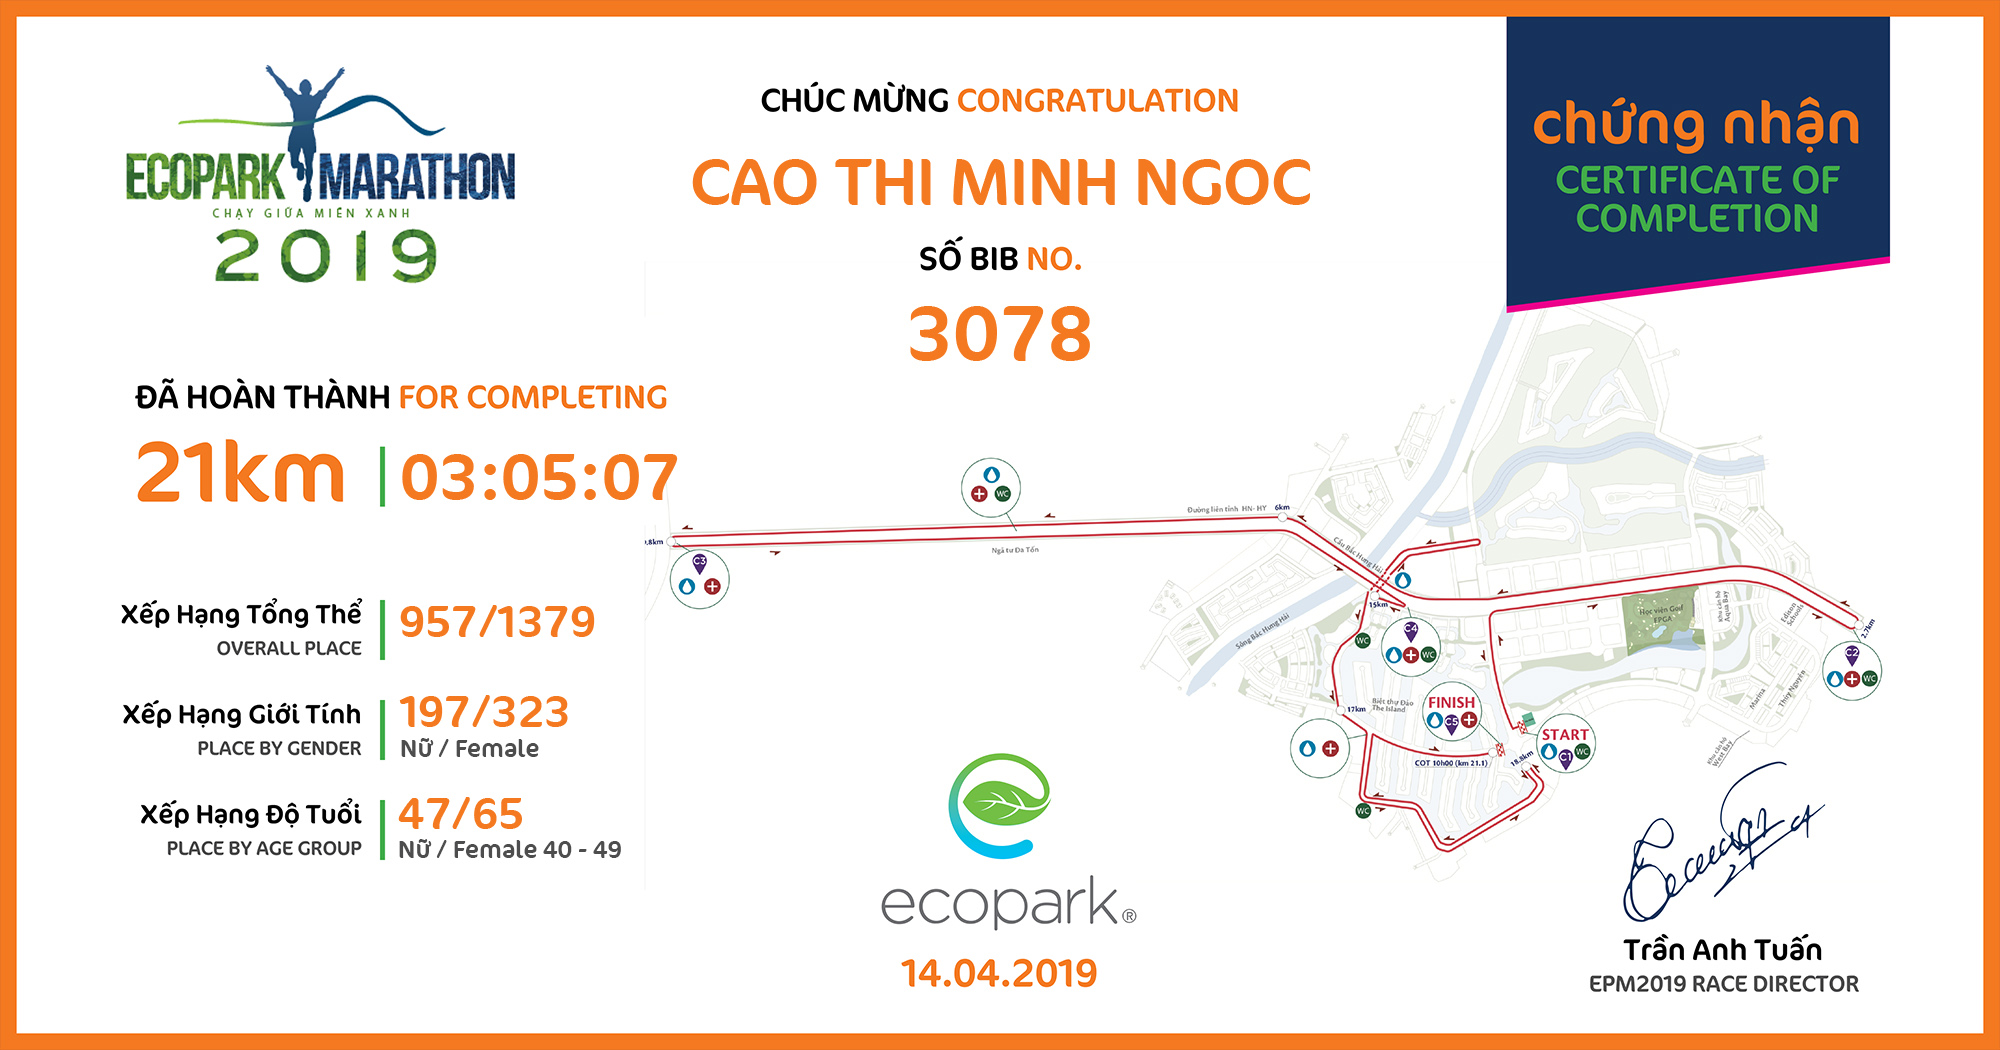 3078 - Cao Thi Minh Ngoc